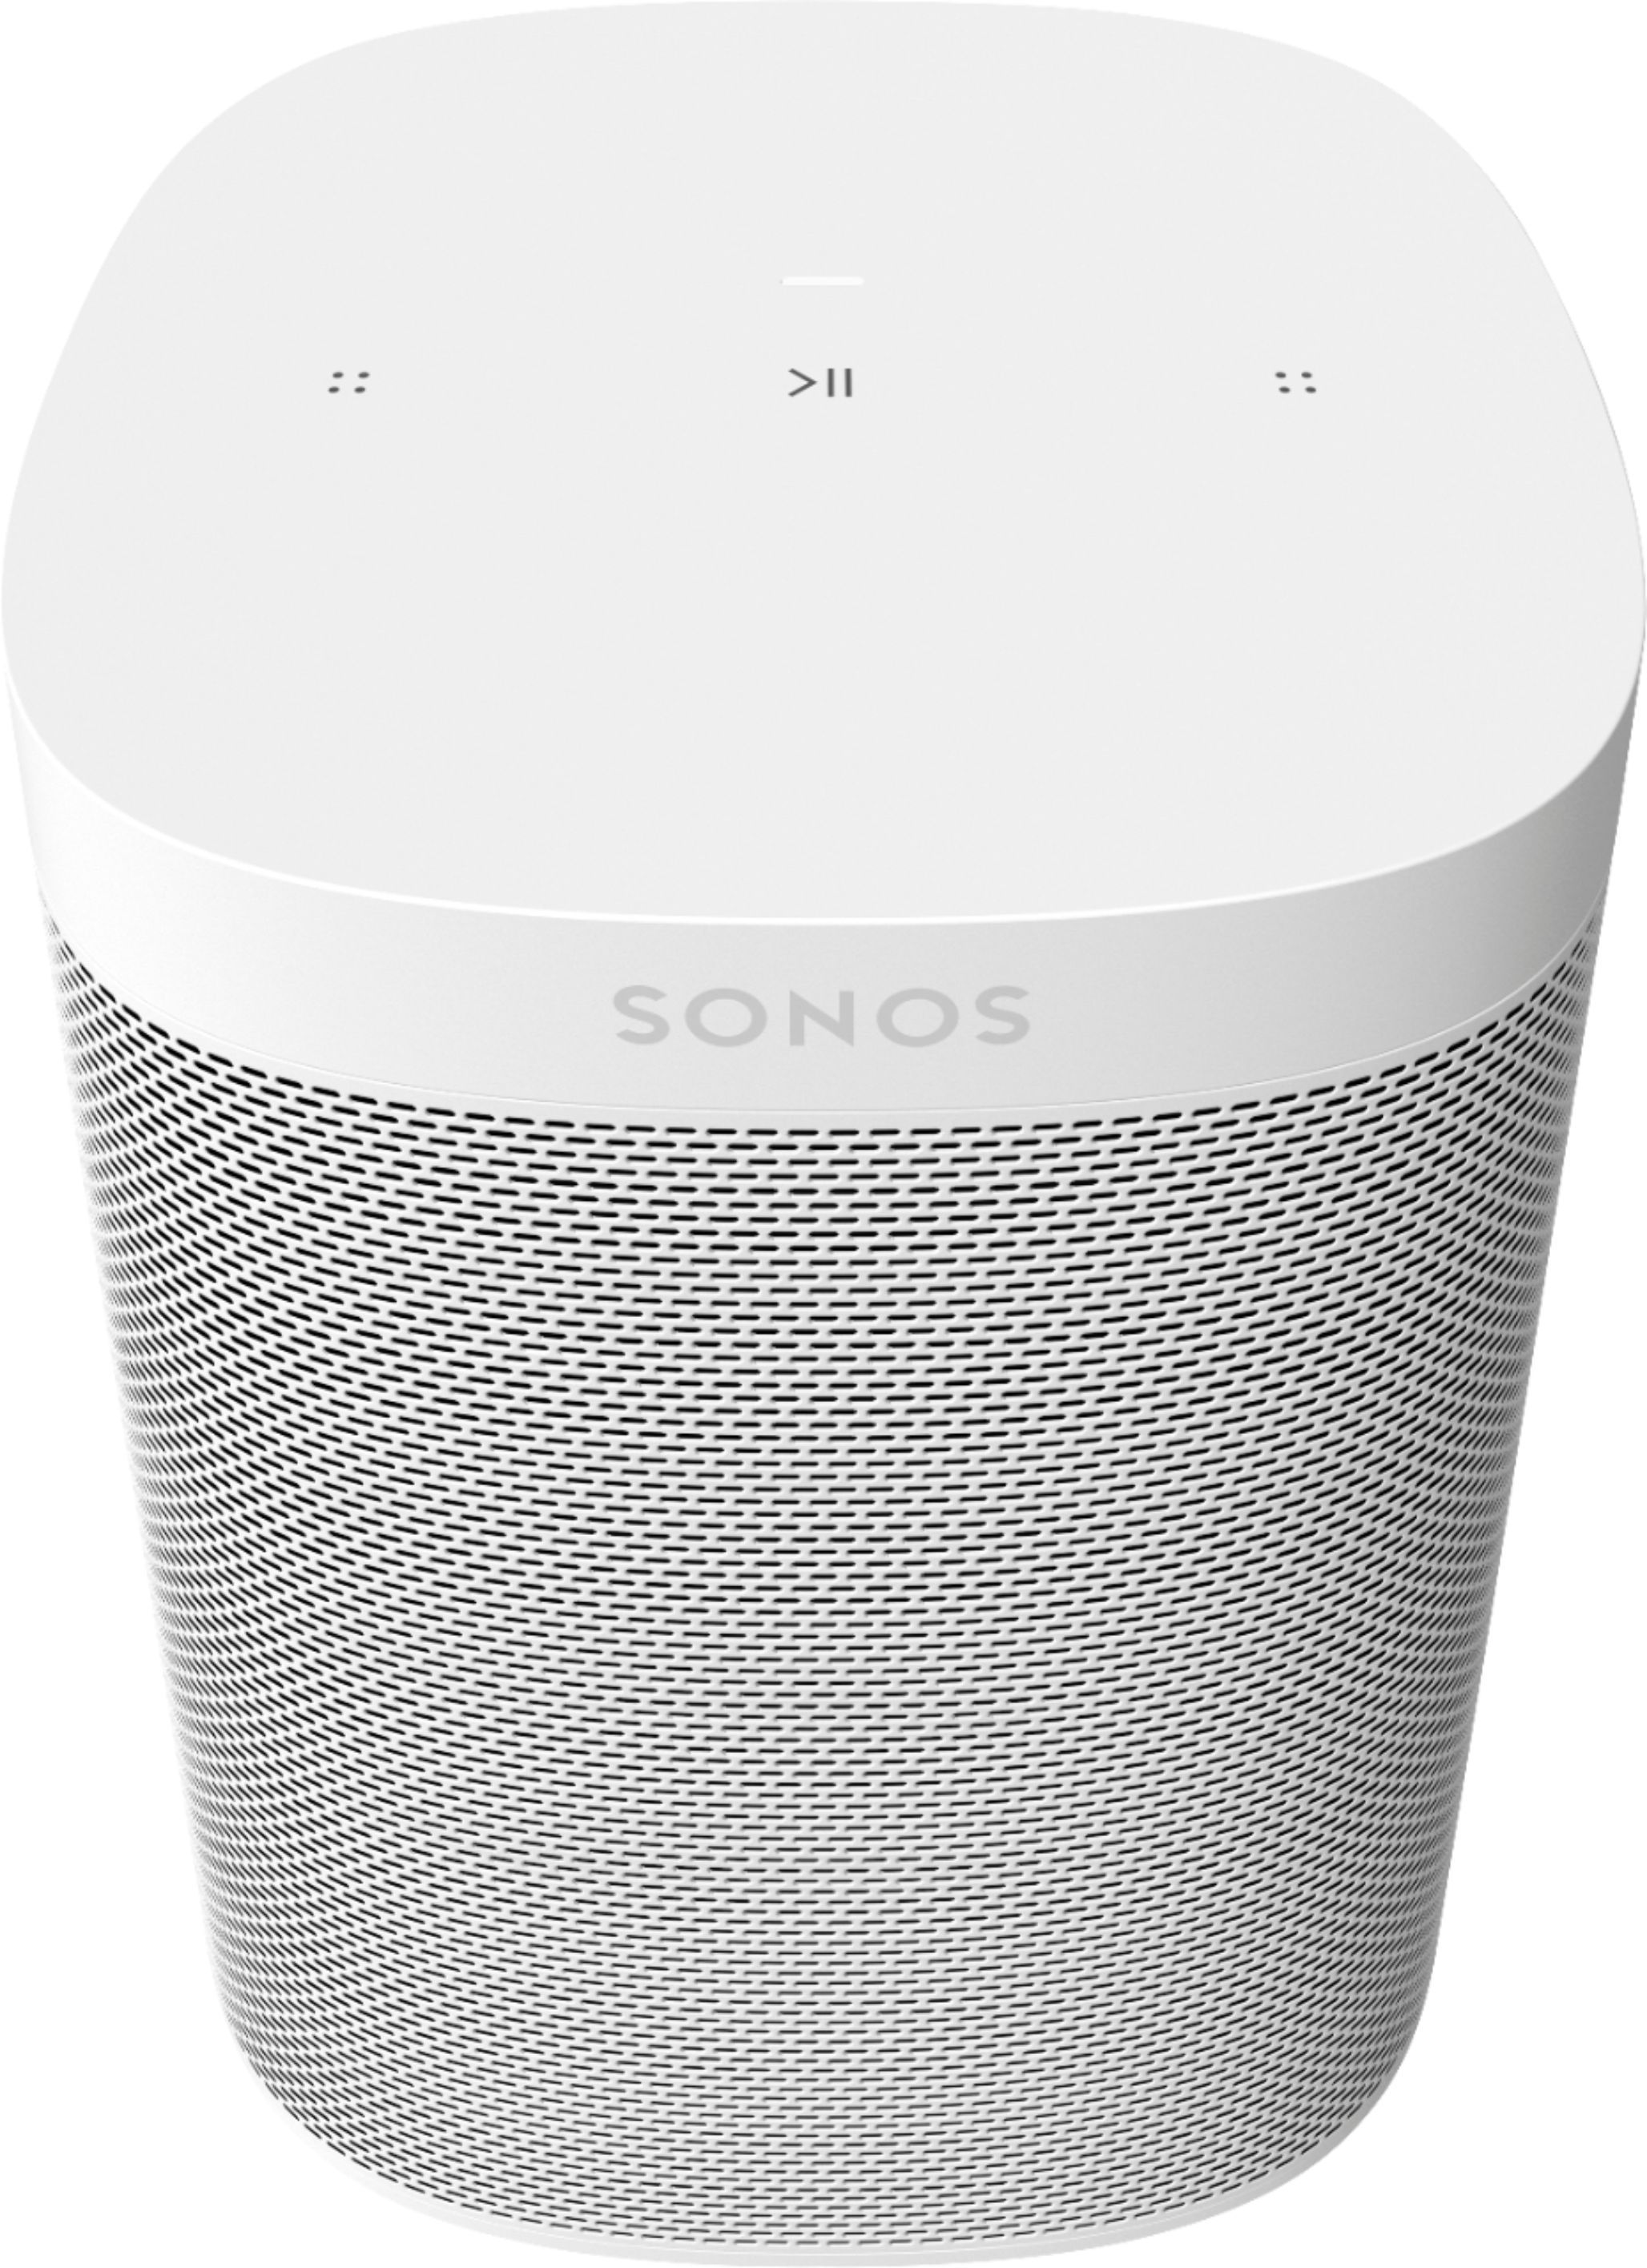 inspanning Productie Sanctie Best Buy: Sonos Geek Squad Certified Refurbished One SL Wireless Smart  Speaker White GSRF-ONESLUS1